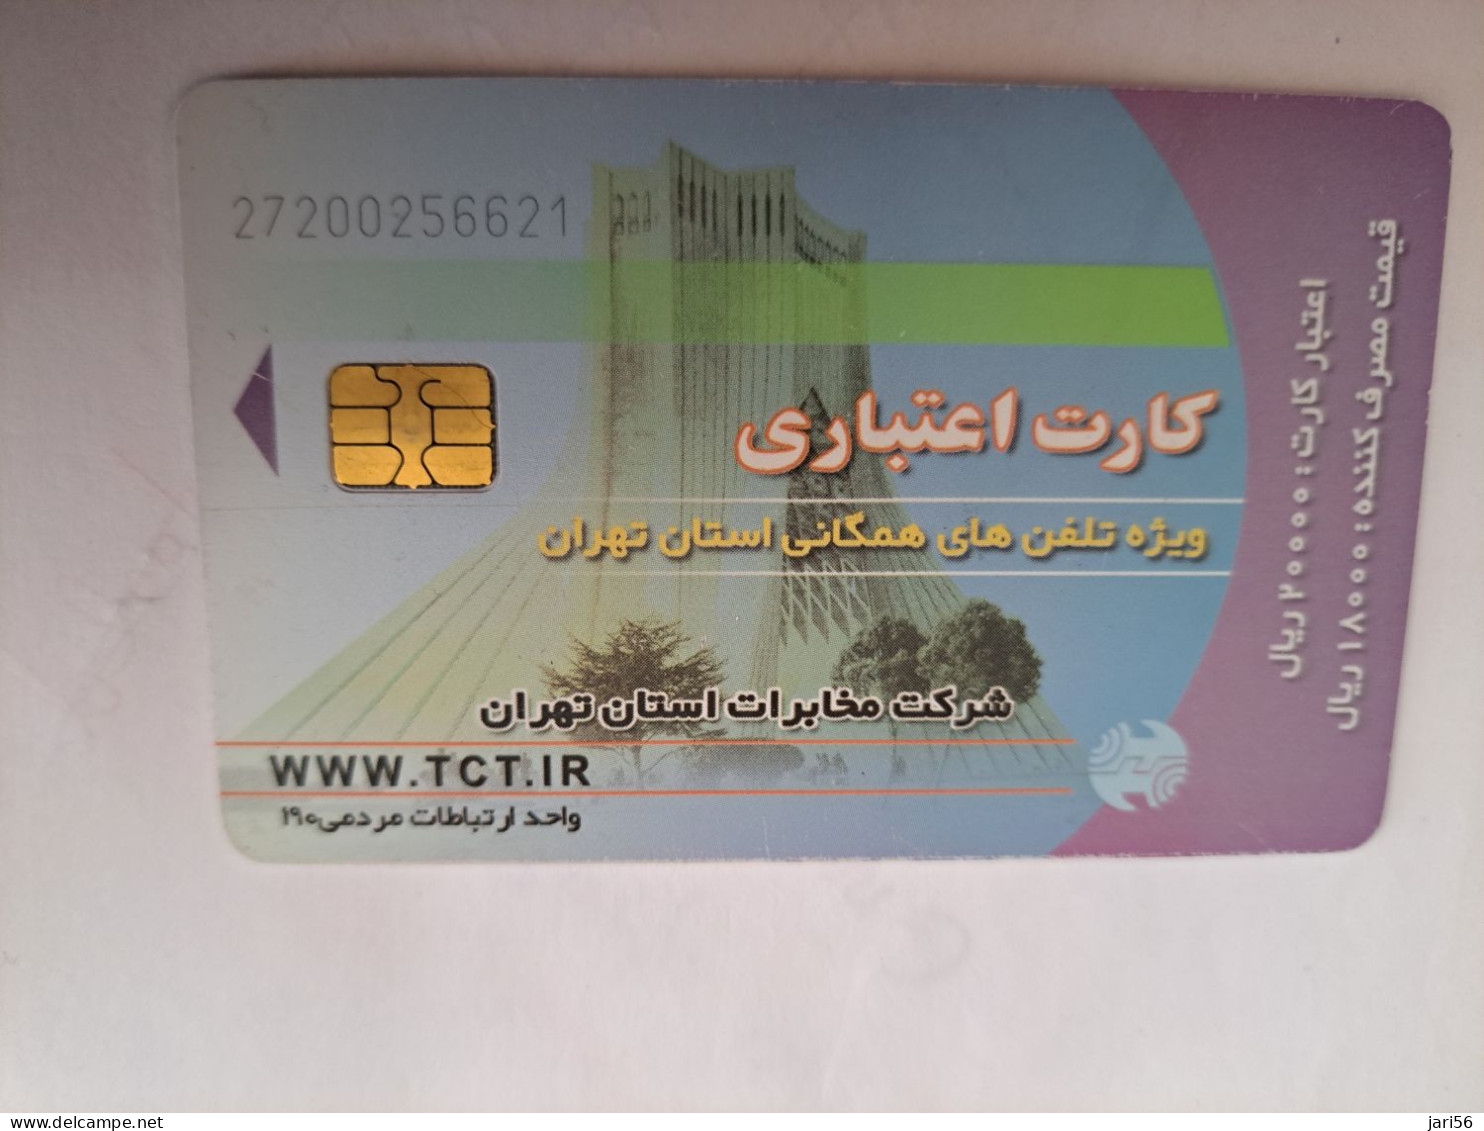 IRAN CHIPCARD    /WWW.TCT.IR   Fine Used Card   **14060 ** - Iran